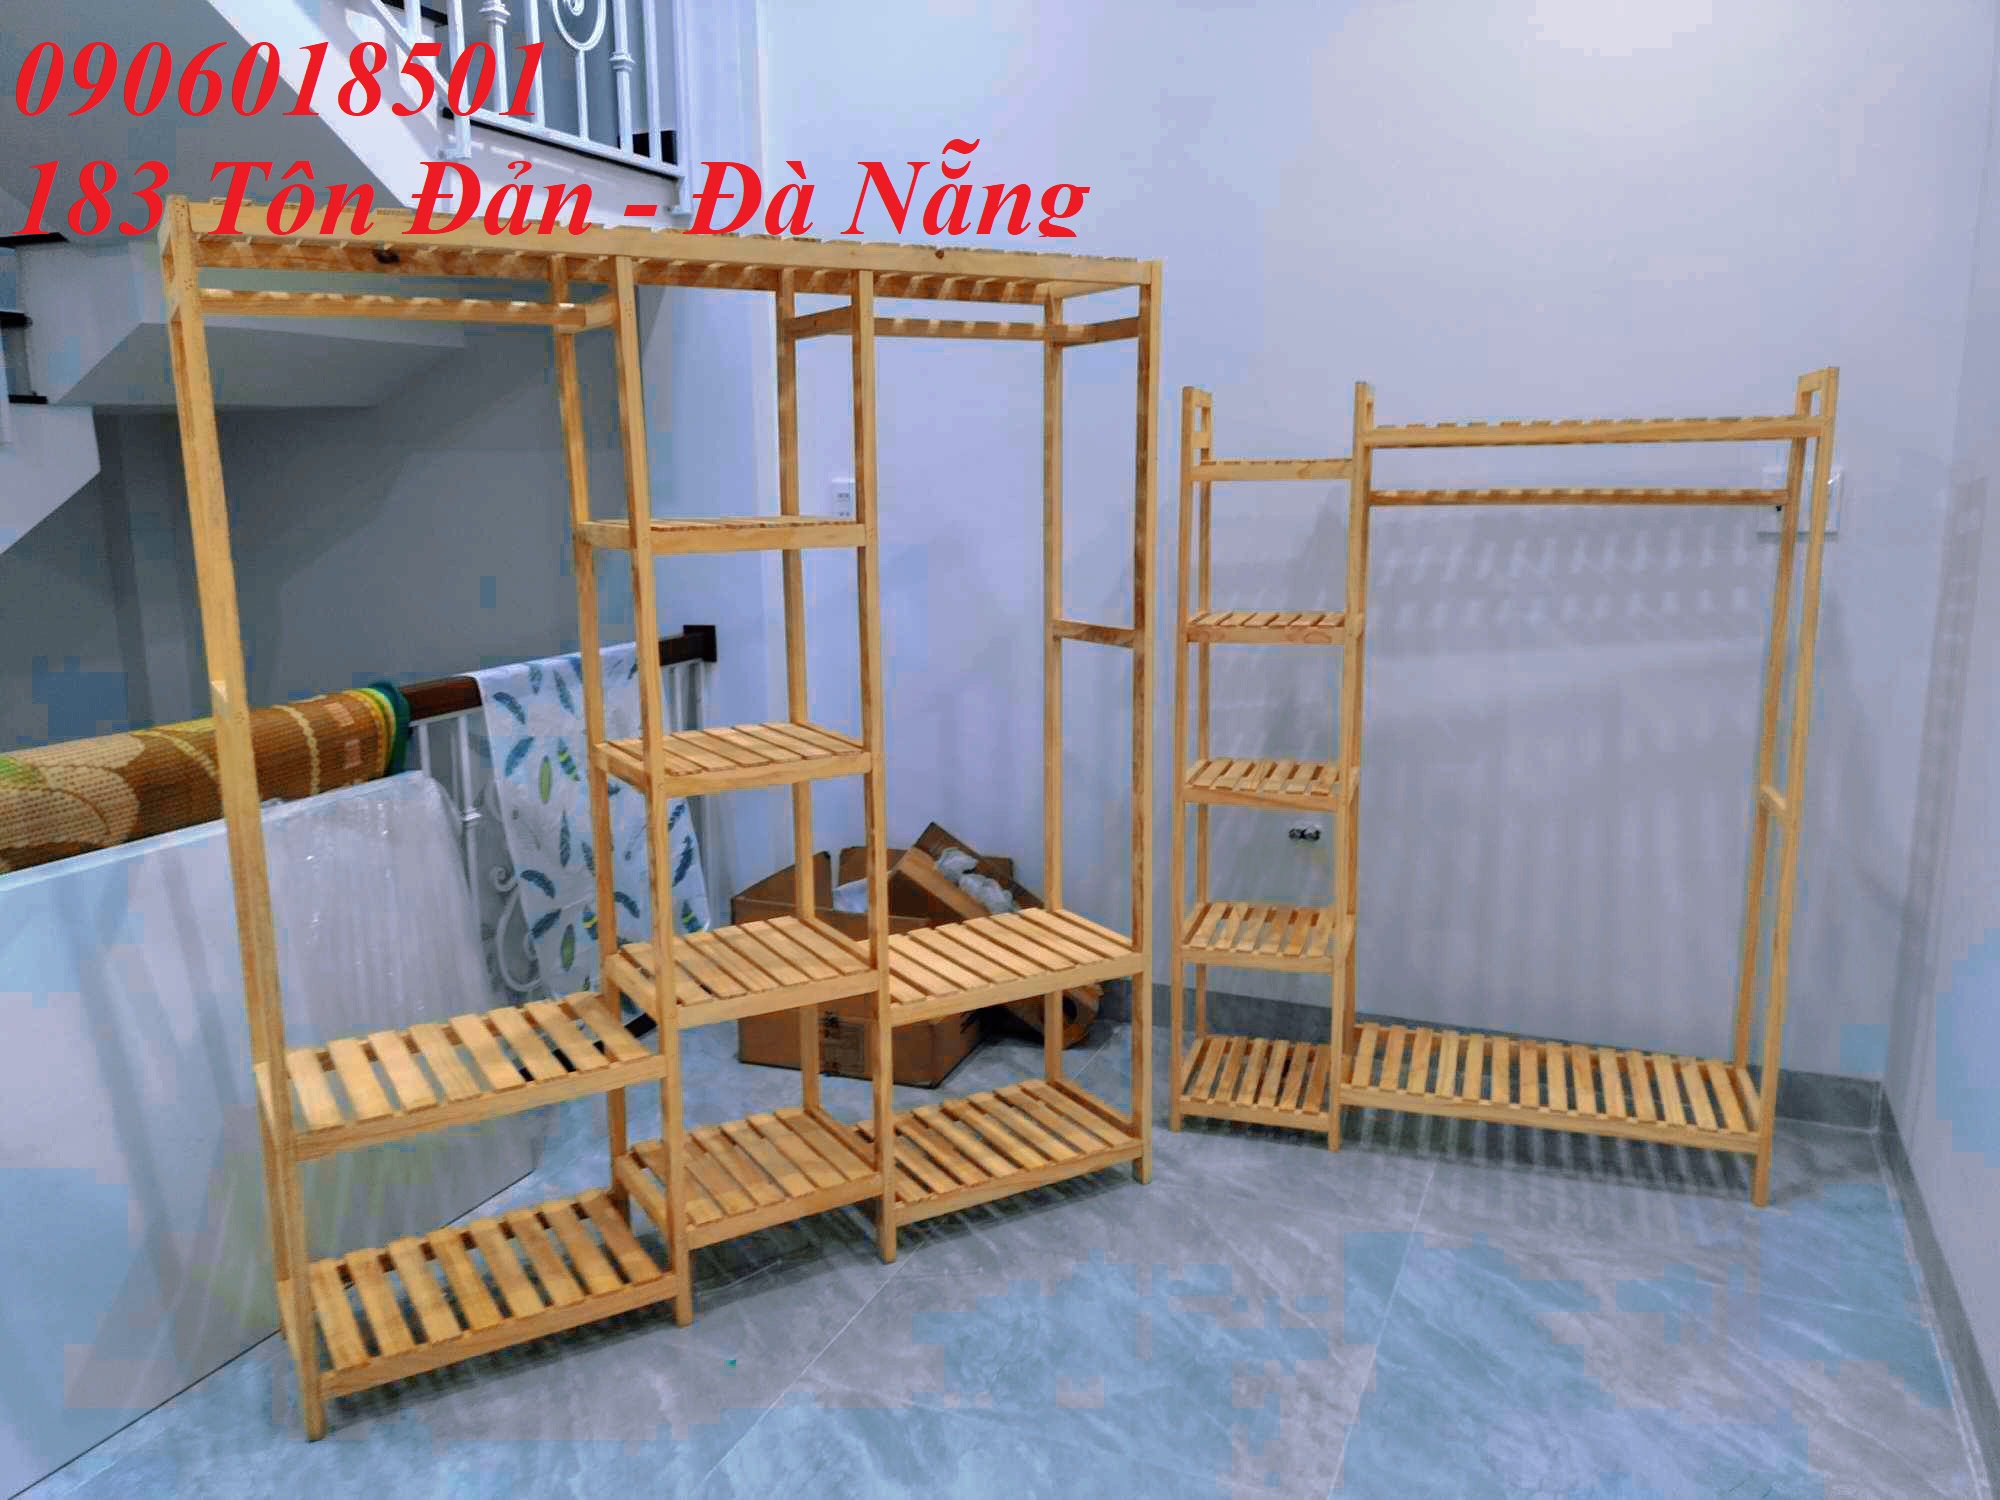 Các mẫu kệ tủ treo áo quần gỗ thông tại Đà Nẵng - Hội An 0906018501